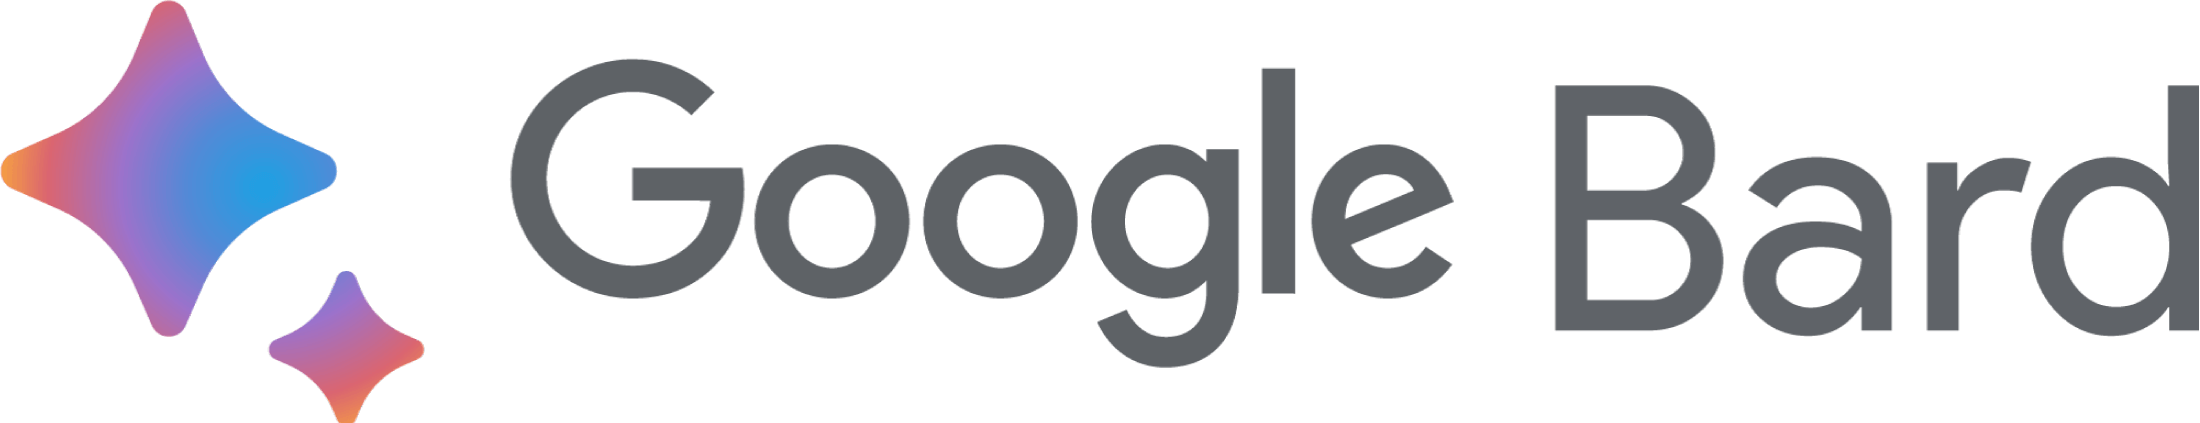 google-bard-logo-png